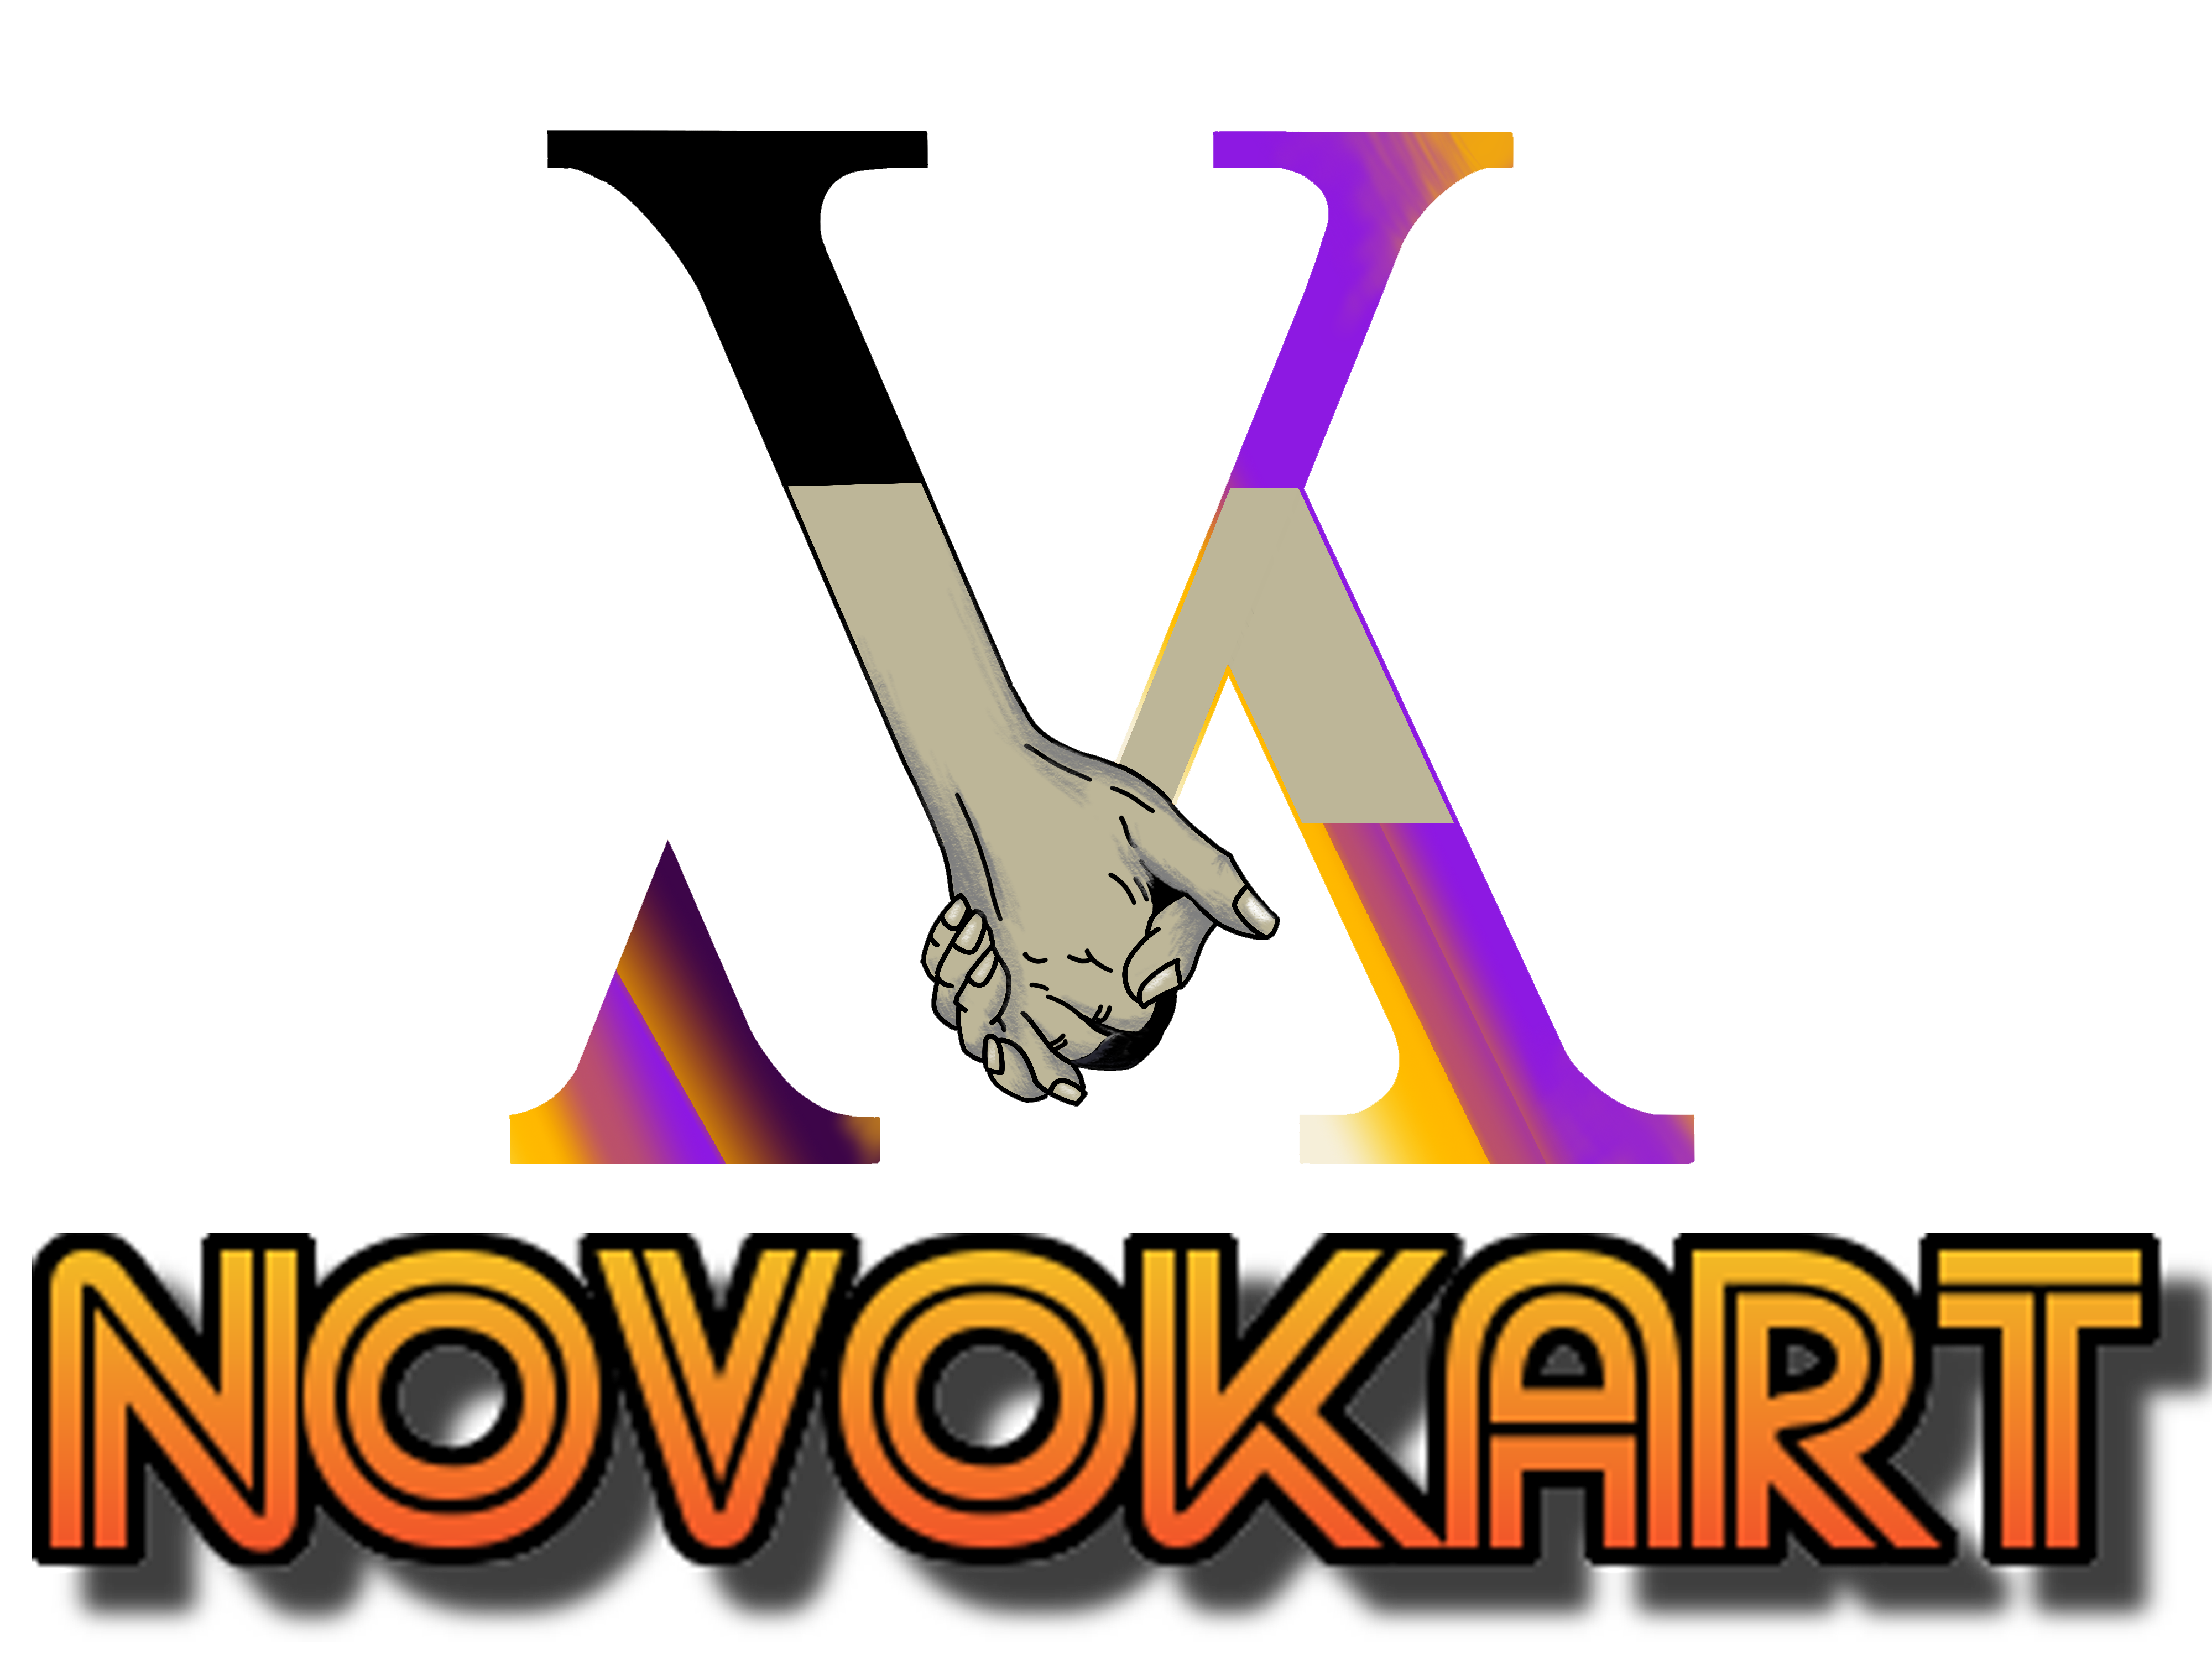 Novokart assured